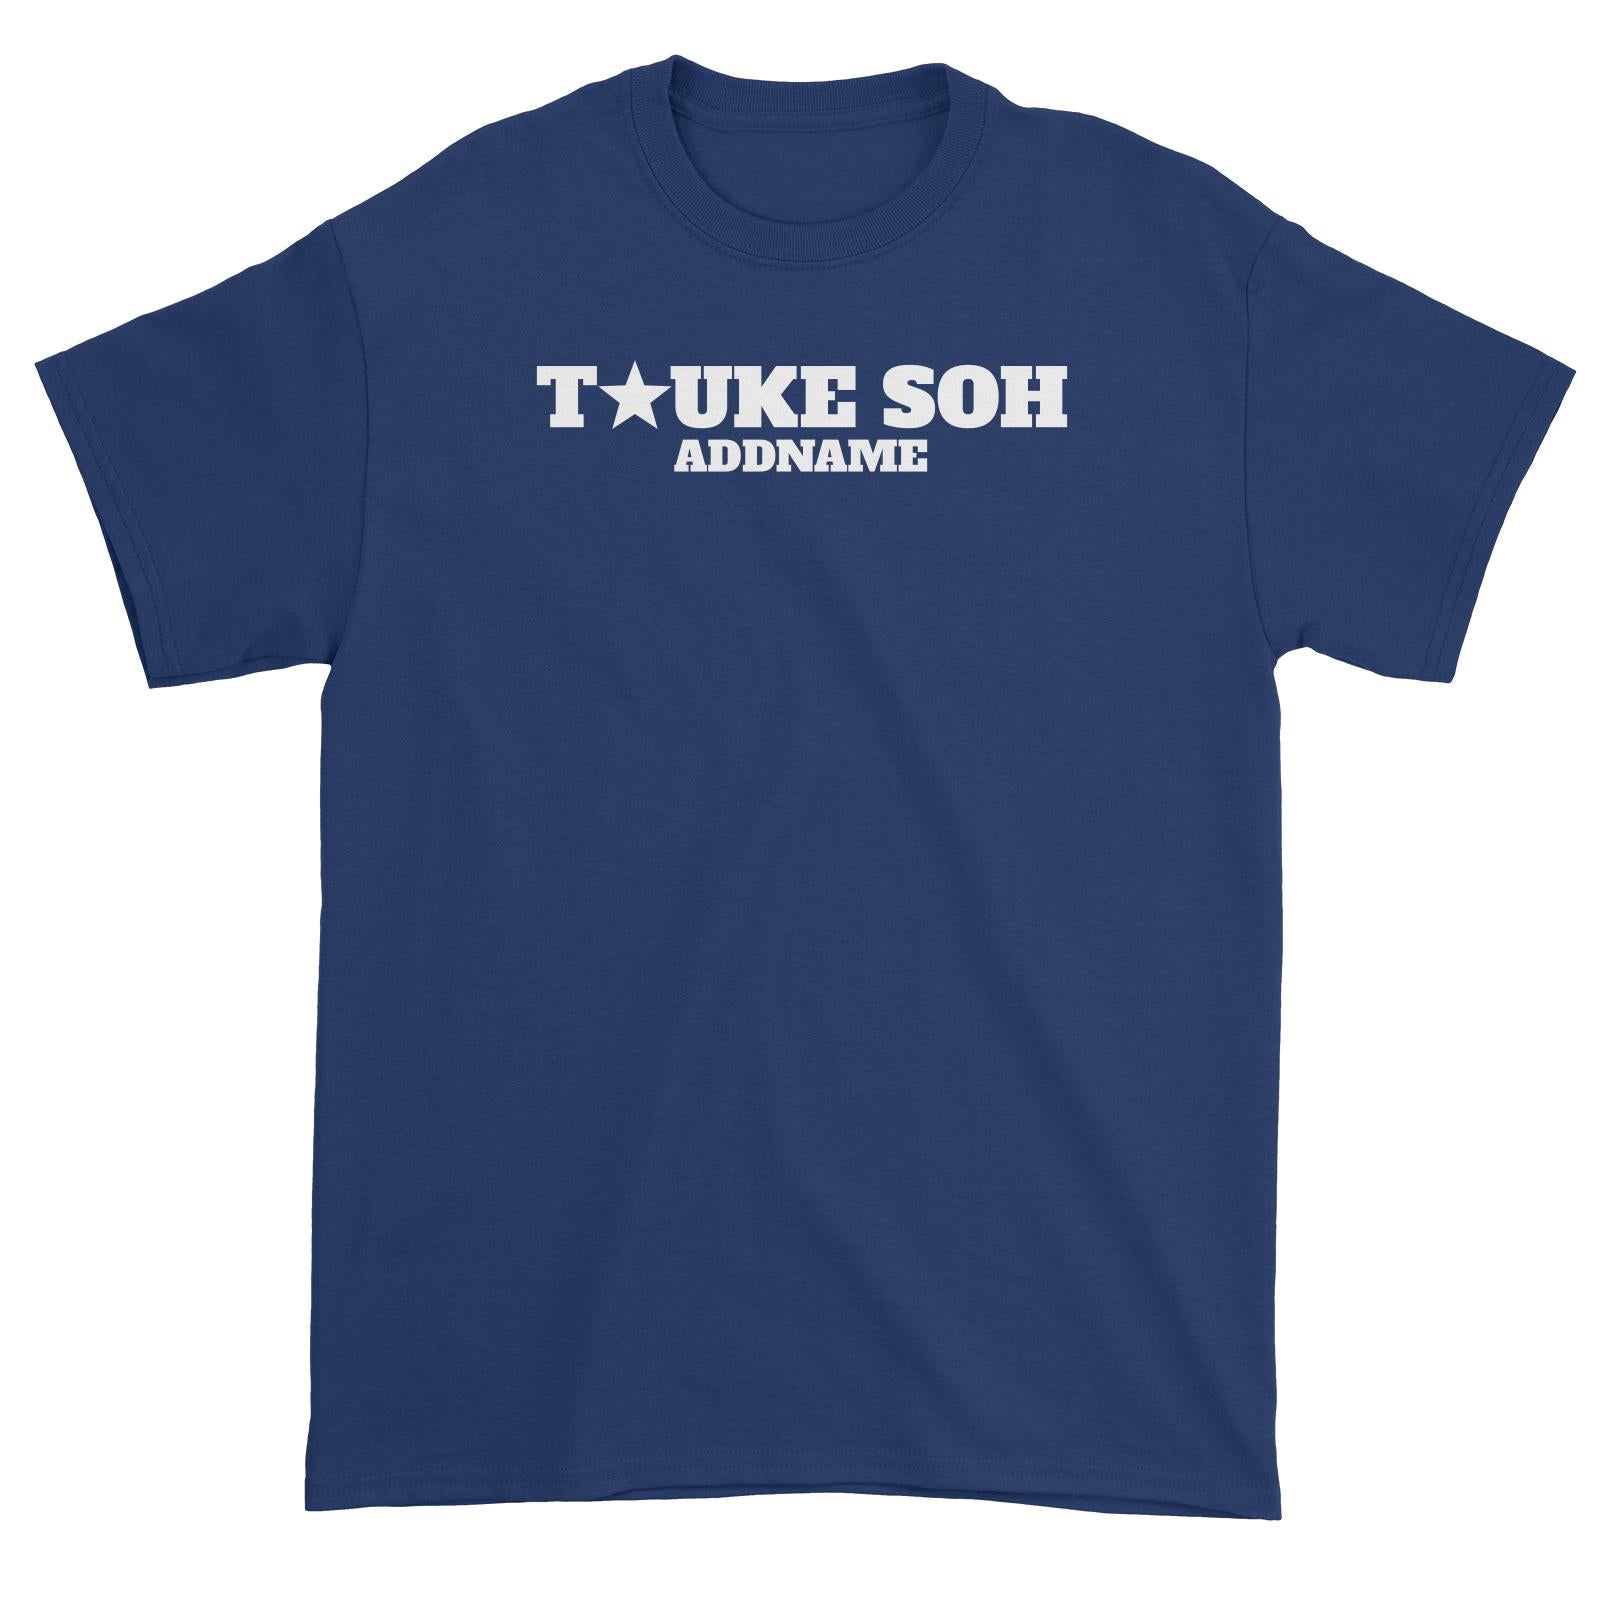 Tauke Soh Star Unisex T-Shirt